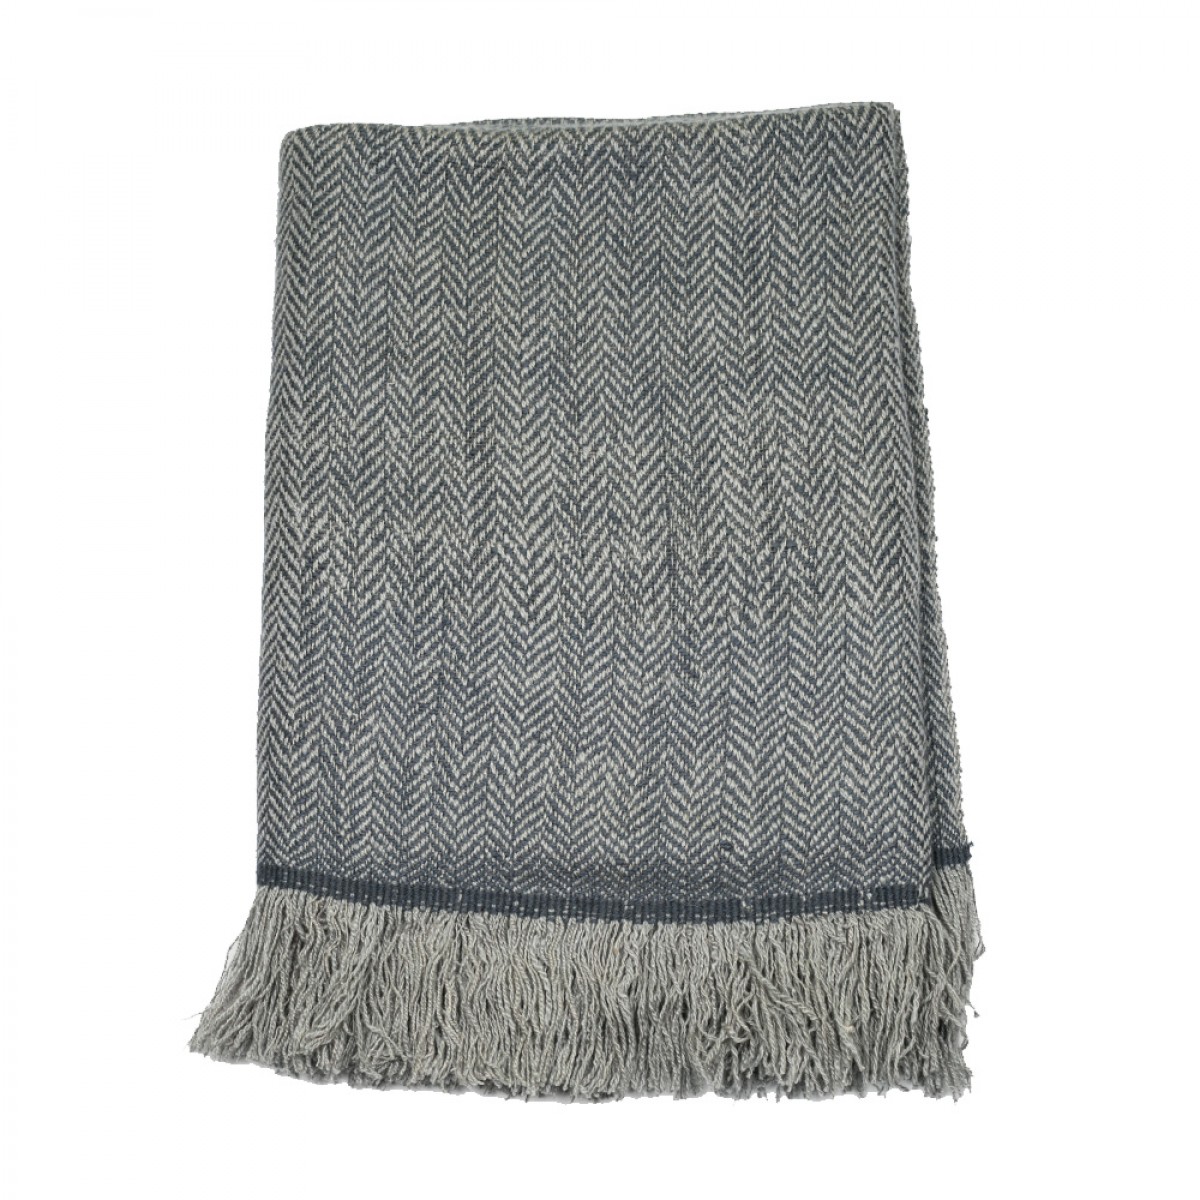 Grey Herringbone Weave Cashmere Blanket (Made to Order)